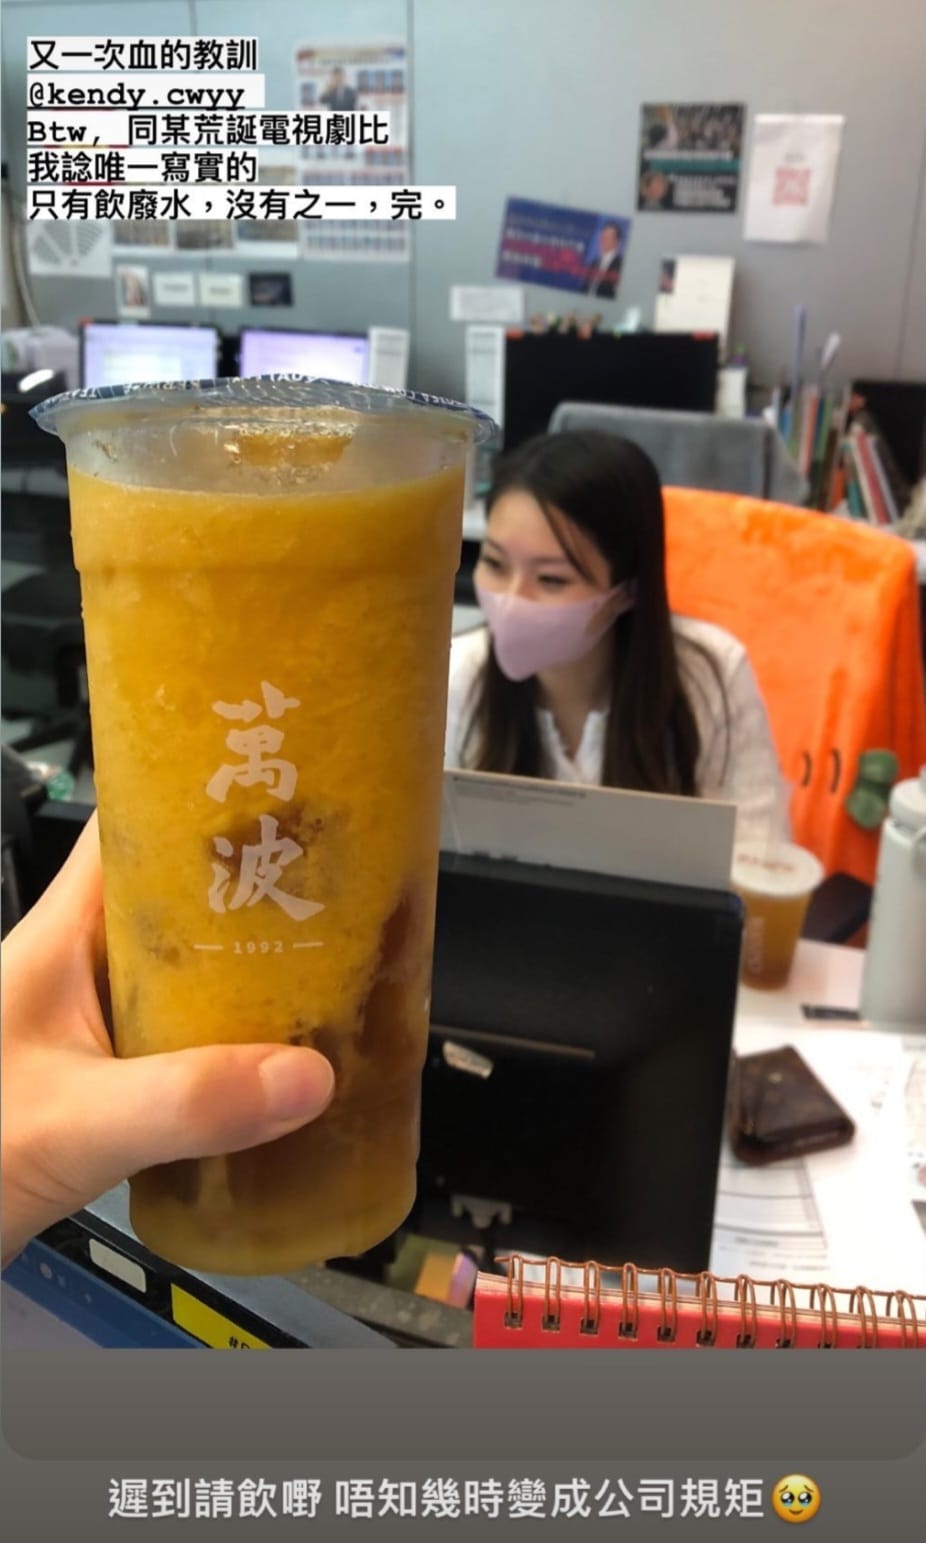 她在IG分享有同事遟到請飲「廢水」的照片，對方暗指《新聞女王》荒誕。